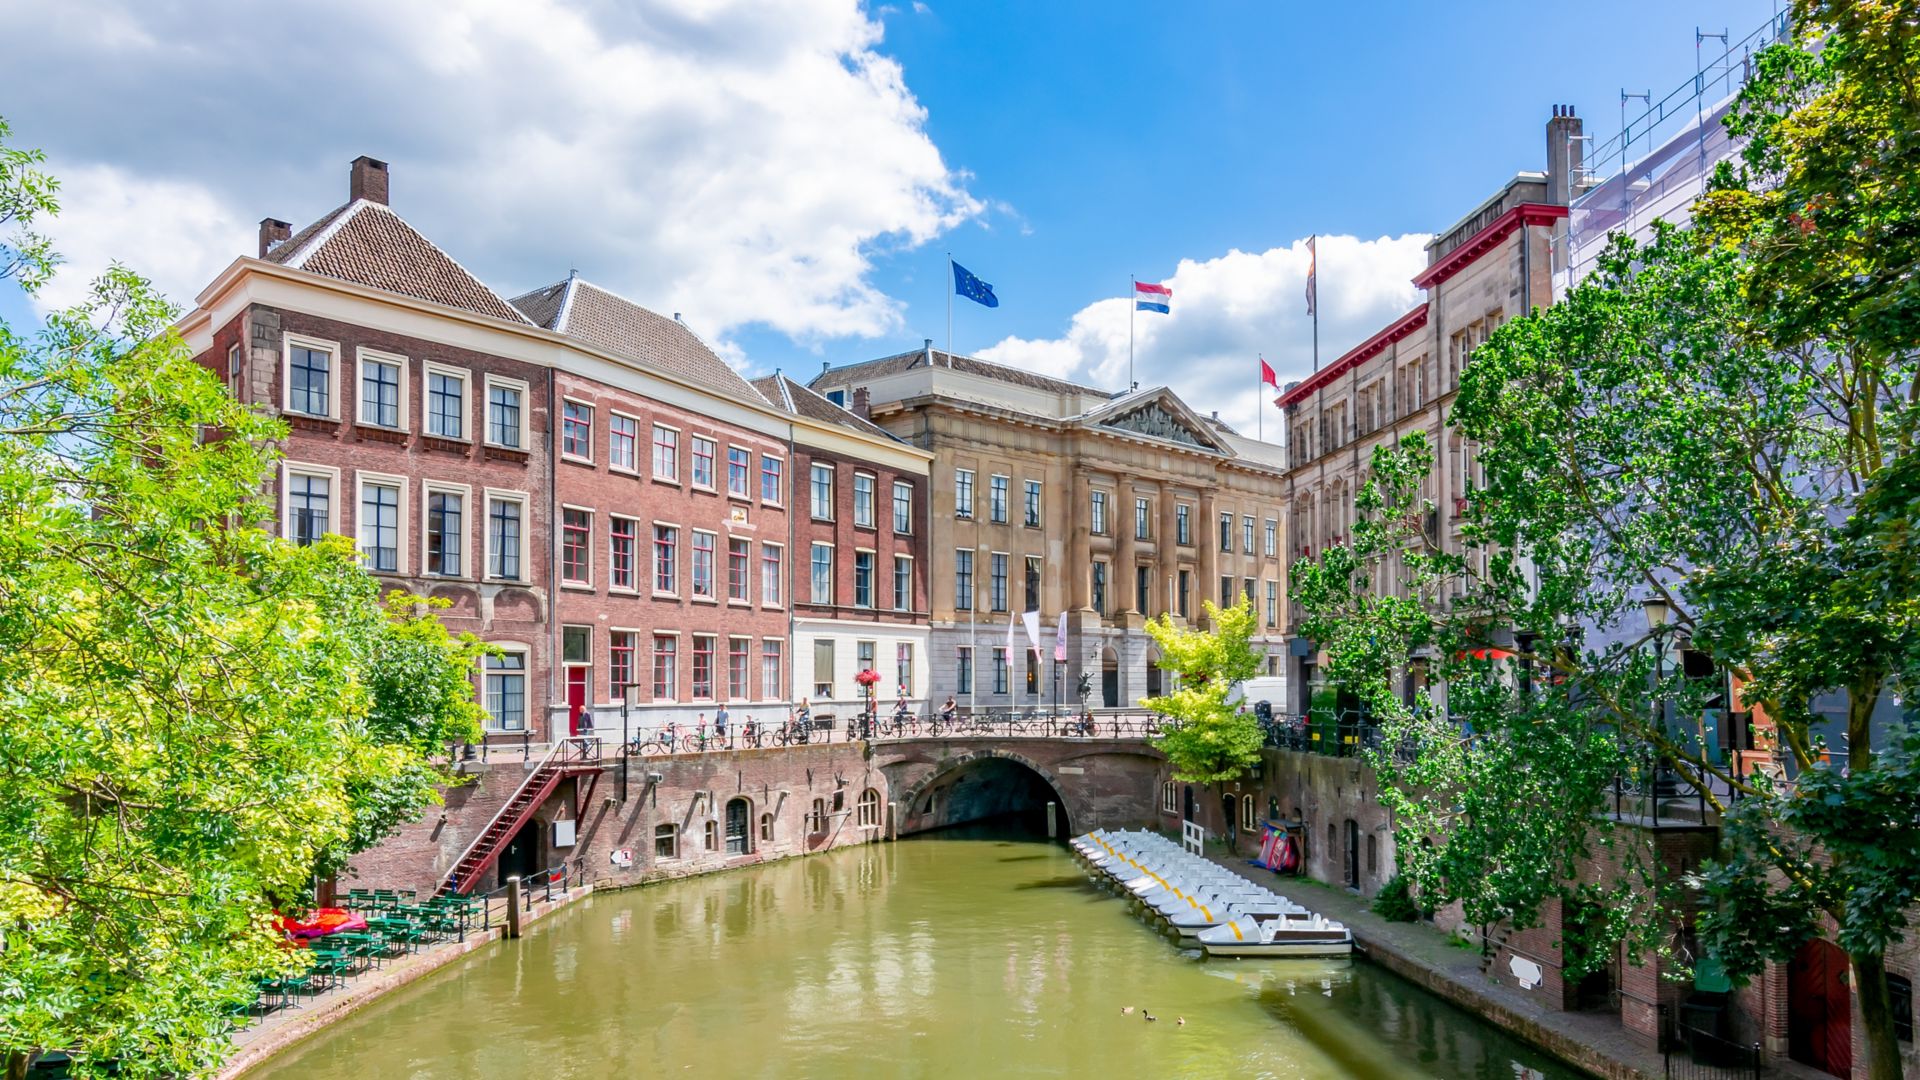 Arquitectura de Utrecht y canales de dos niveles en verano, Países Bajos